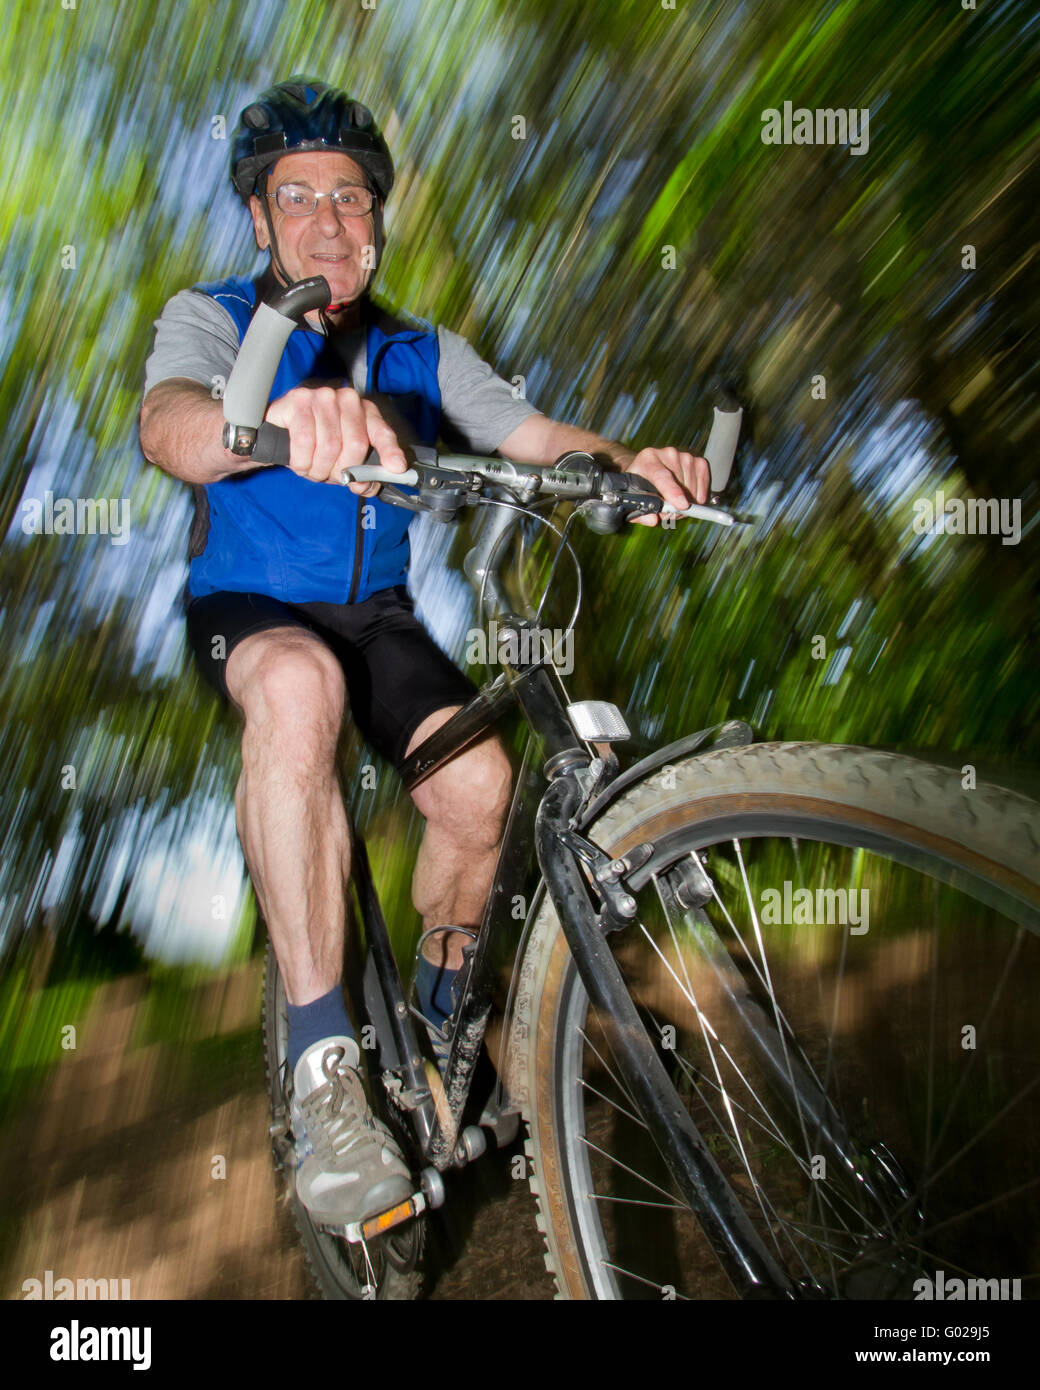 Senior cycling on a mountain bike Stock Photo